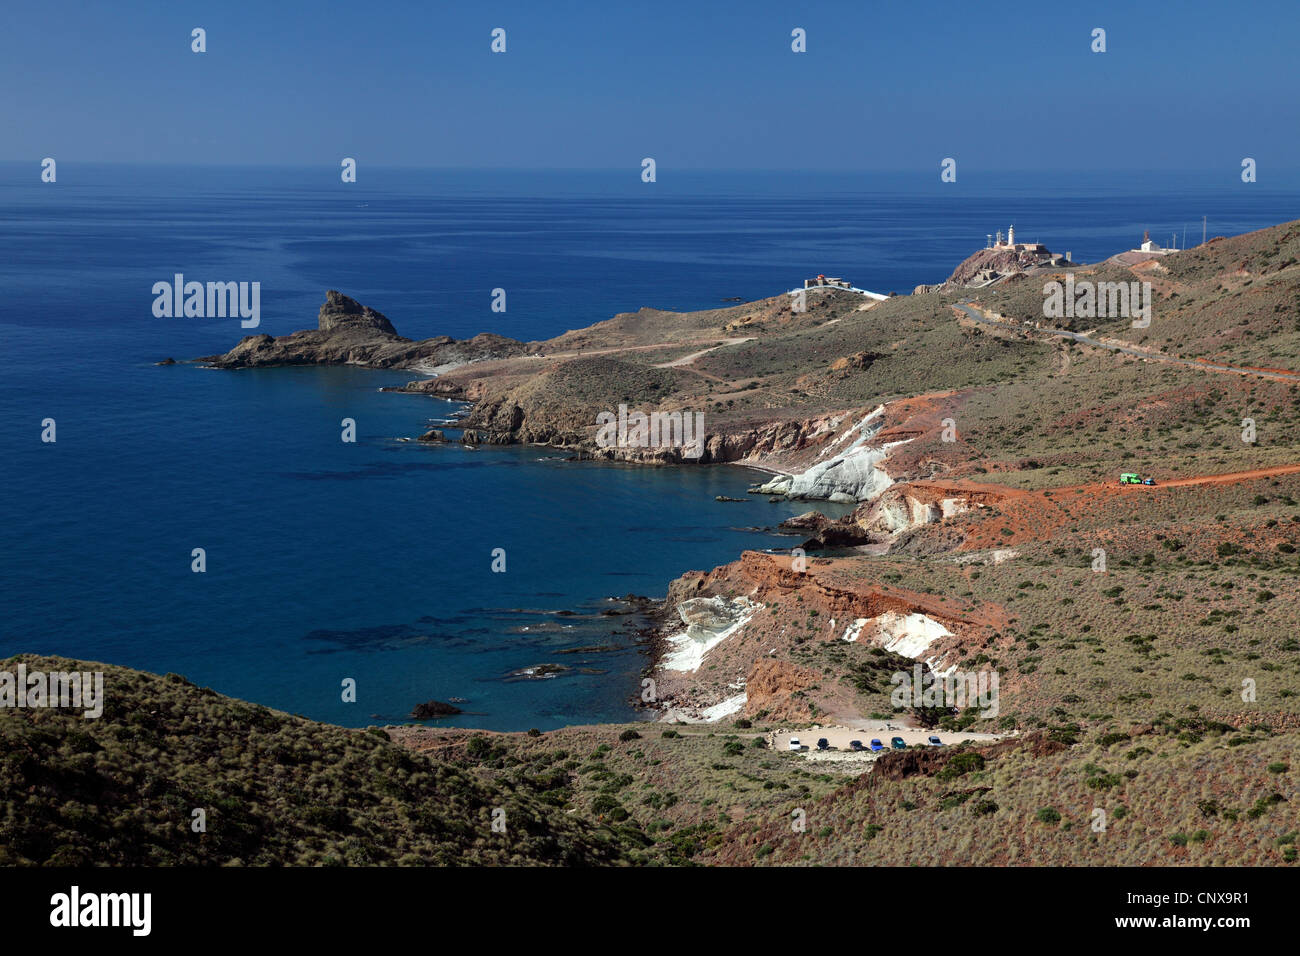 Paysage côtier à Cabo de Gata, Almeria, Espagne Banque D'Images